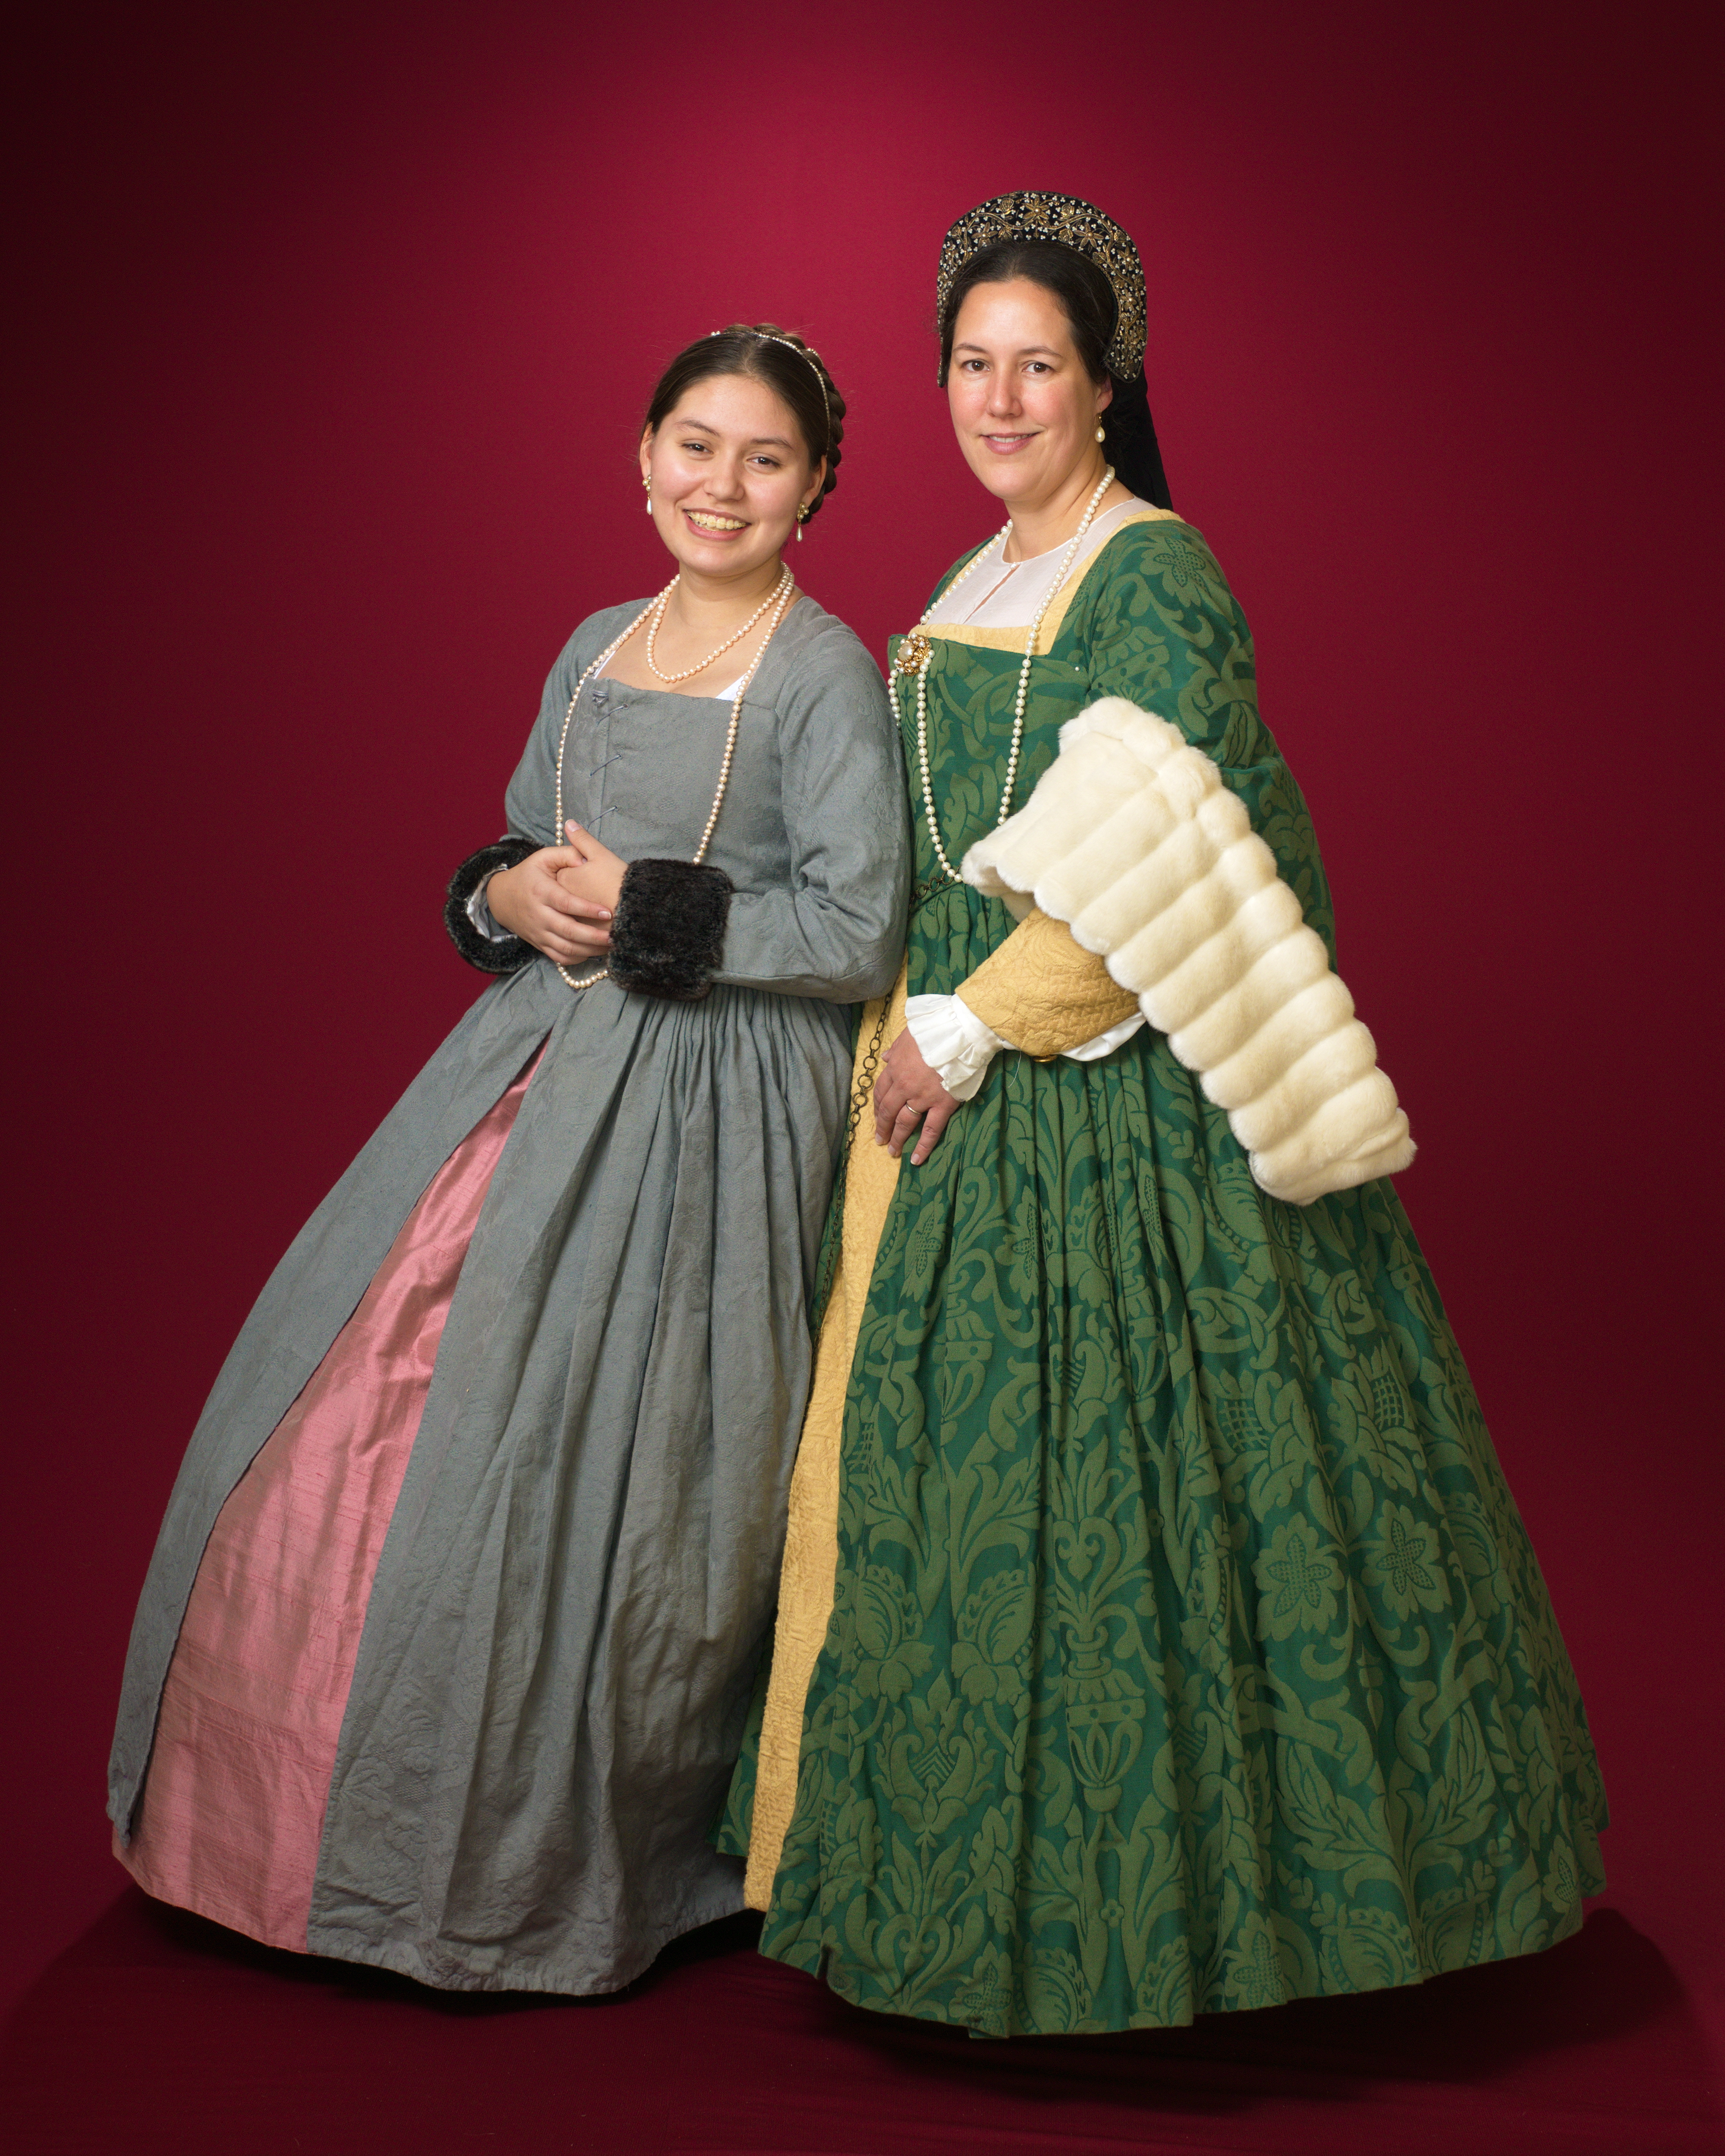 Tudor gowns